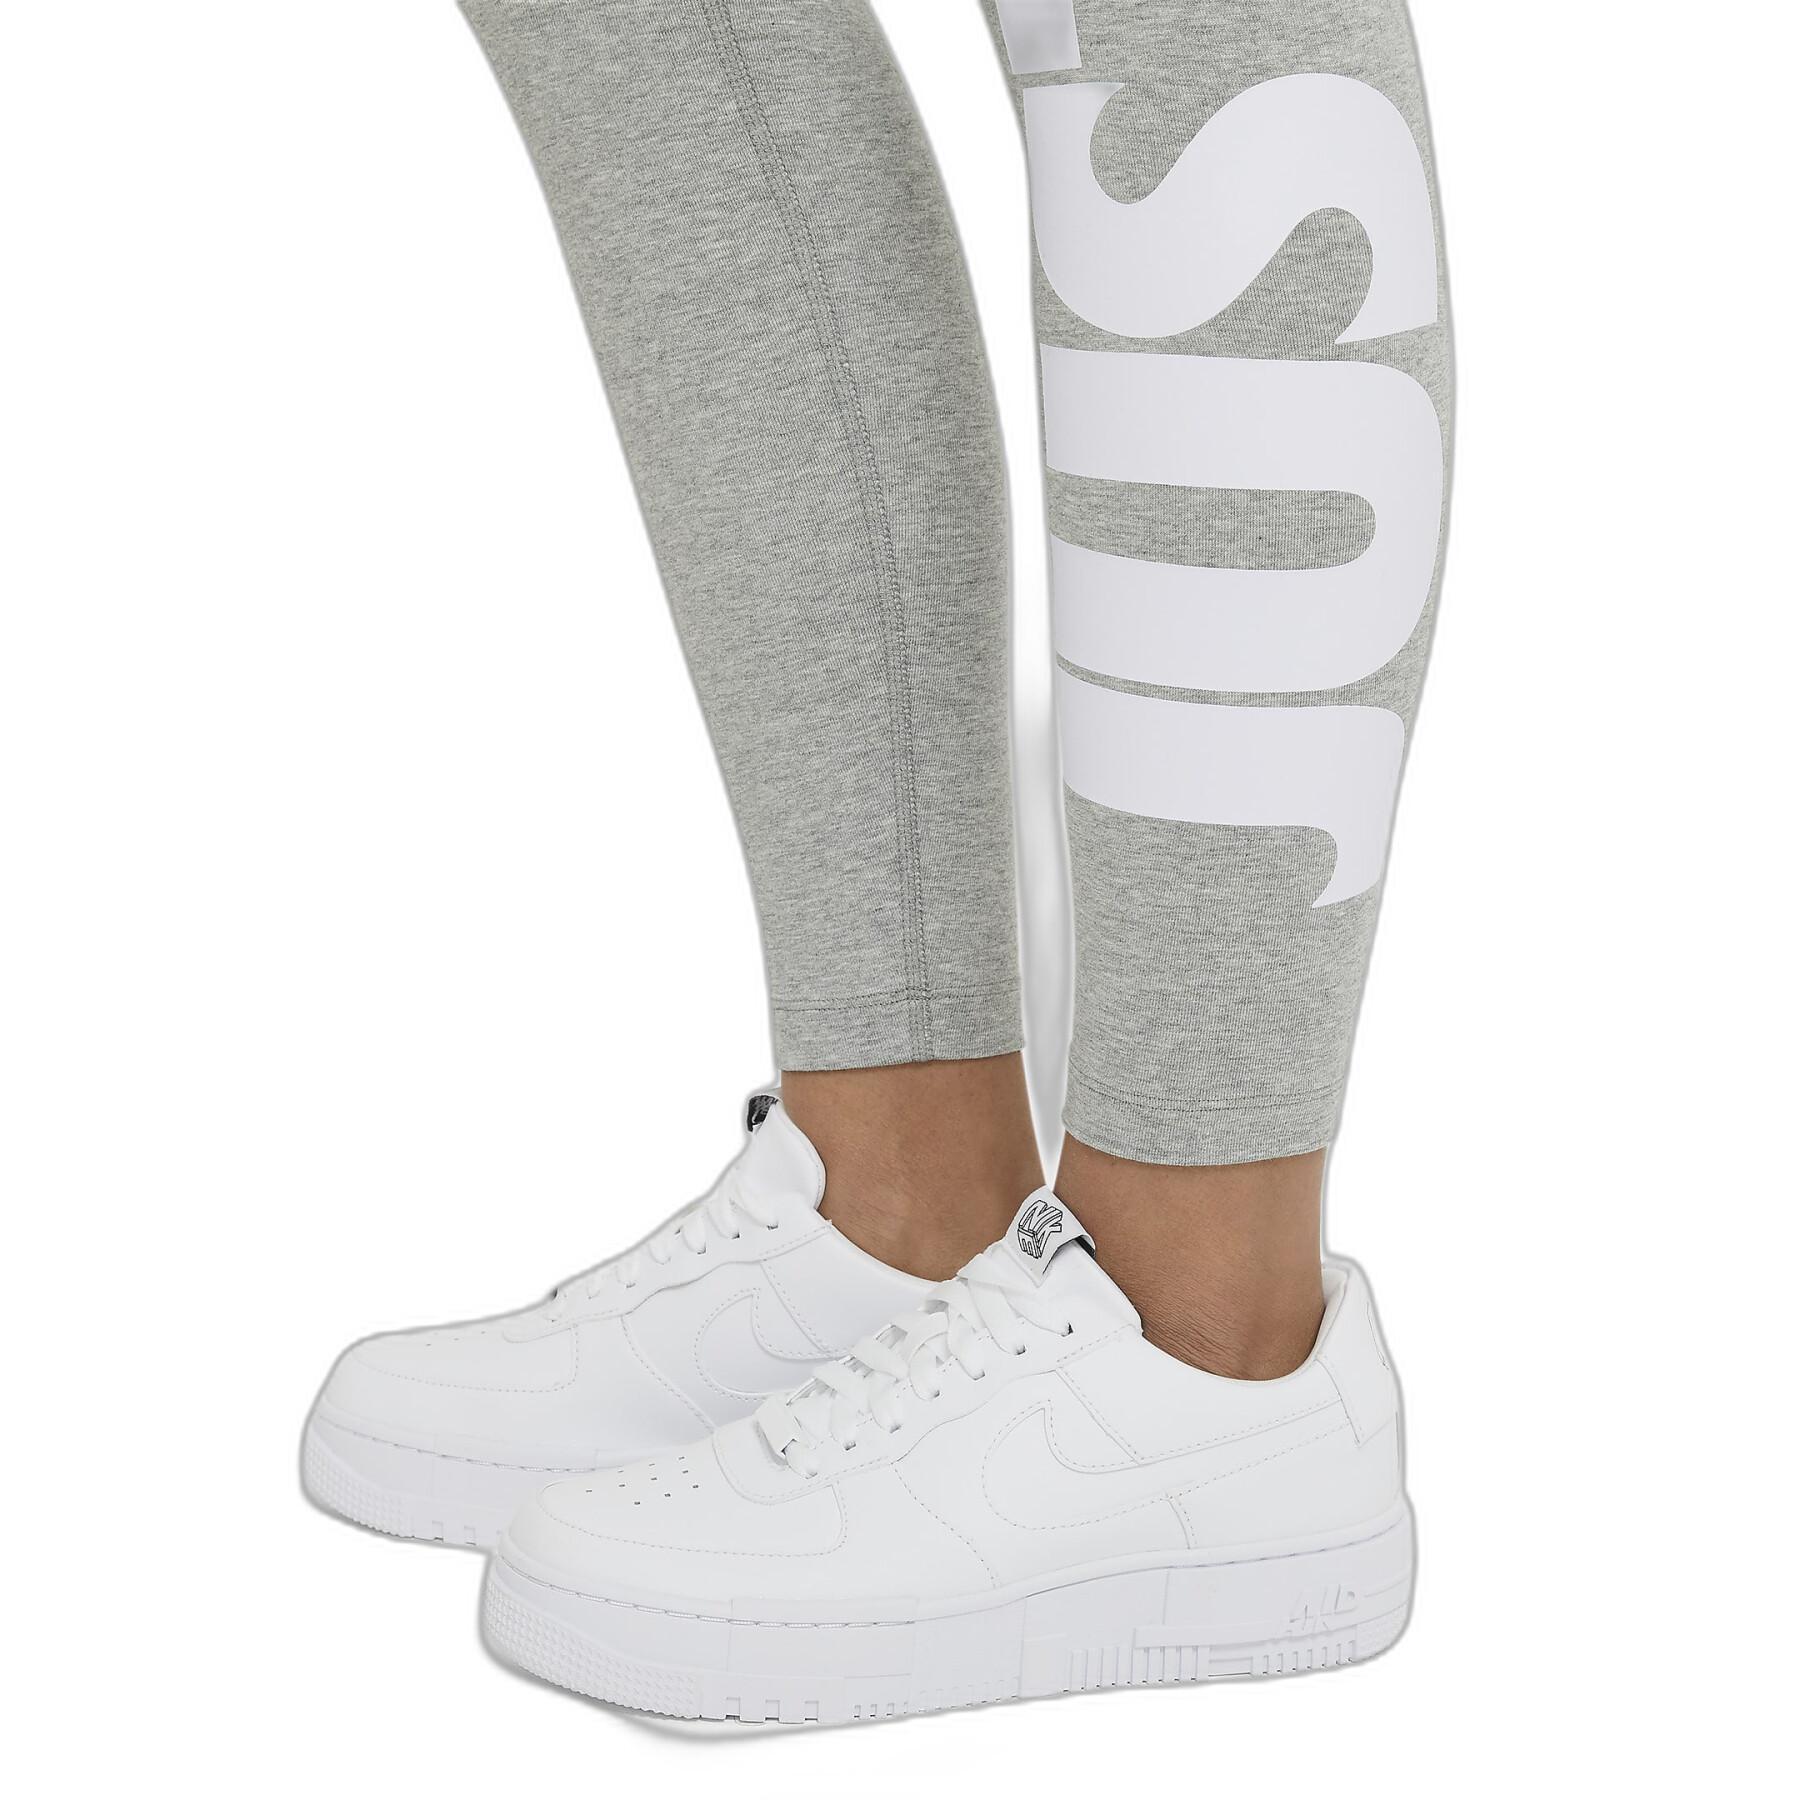 Legging femme Nike Sportswear Essential